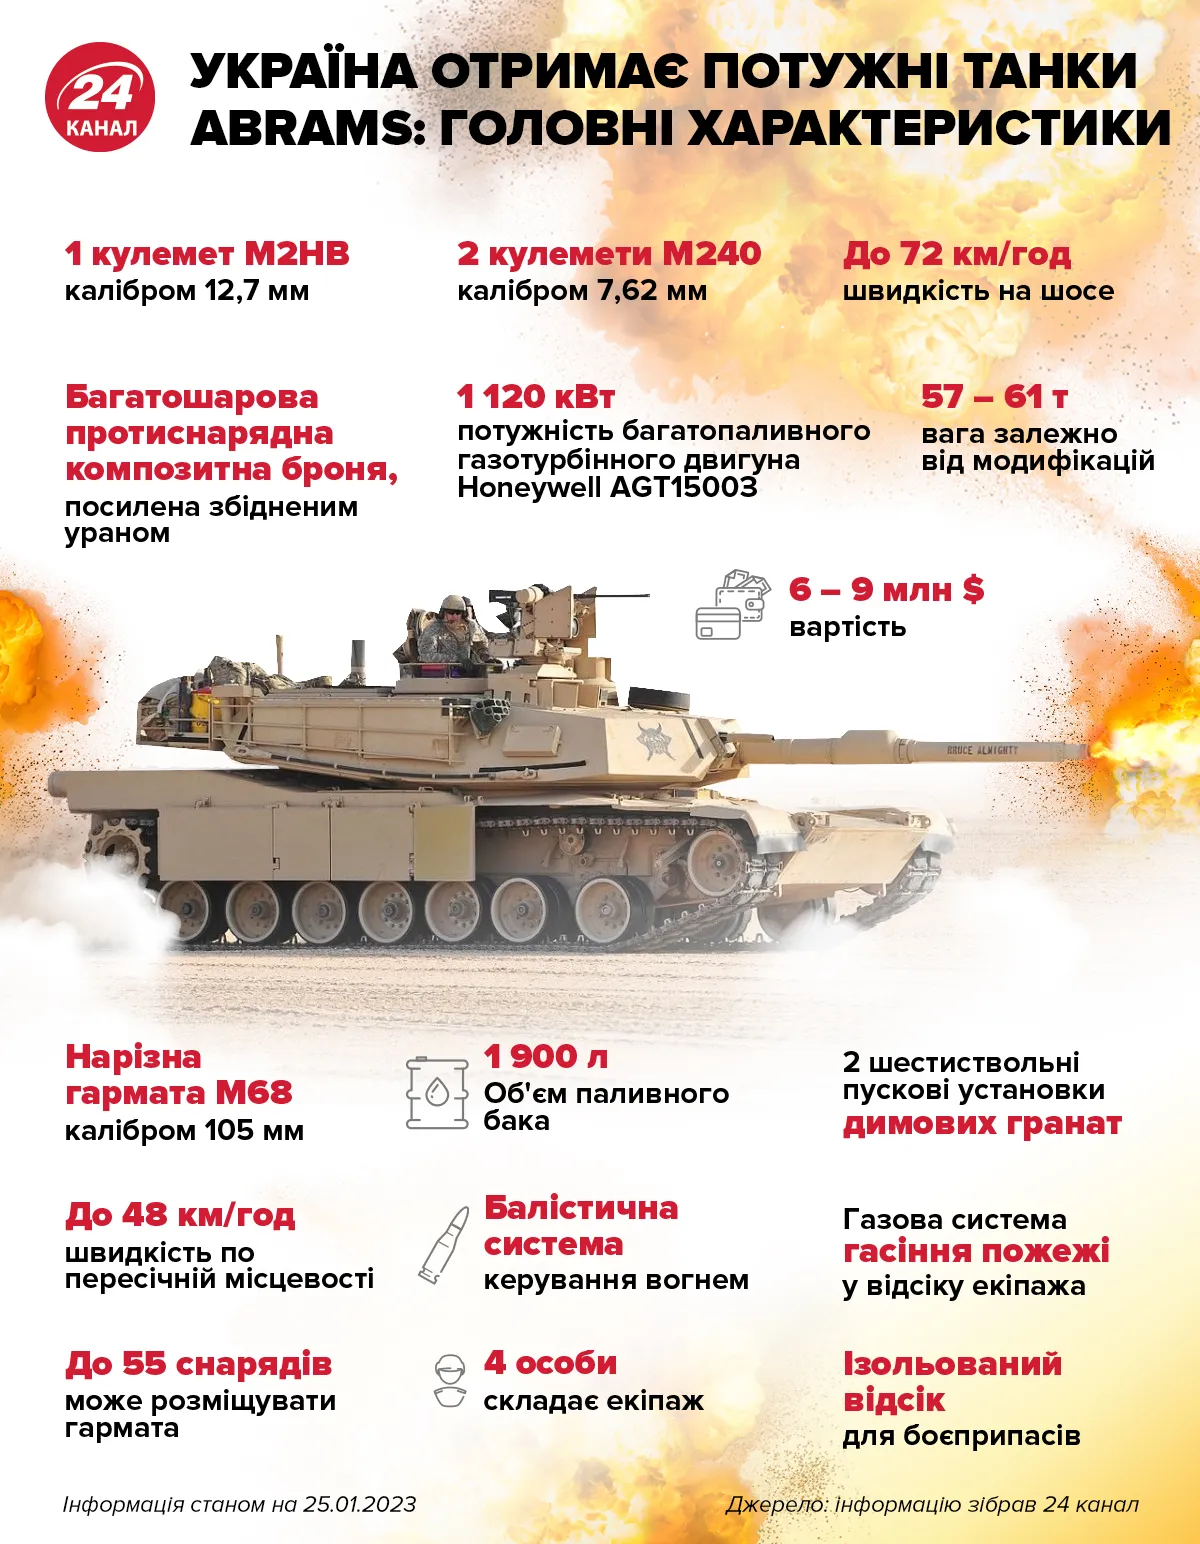 Что известно о танках Abrams / Инфографика 24 канала